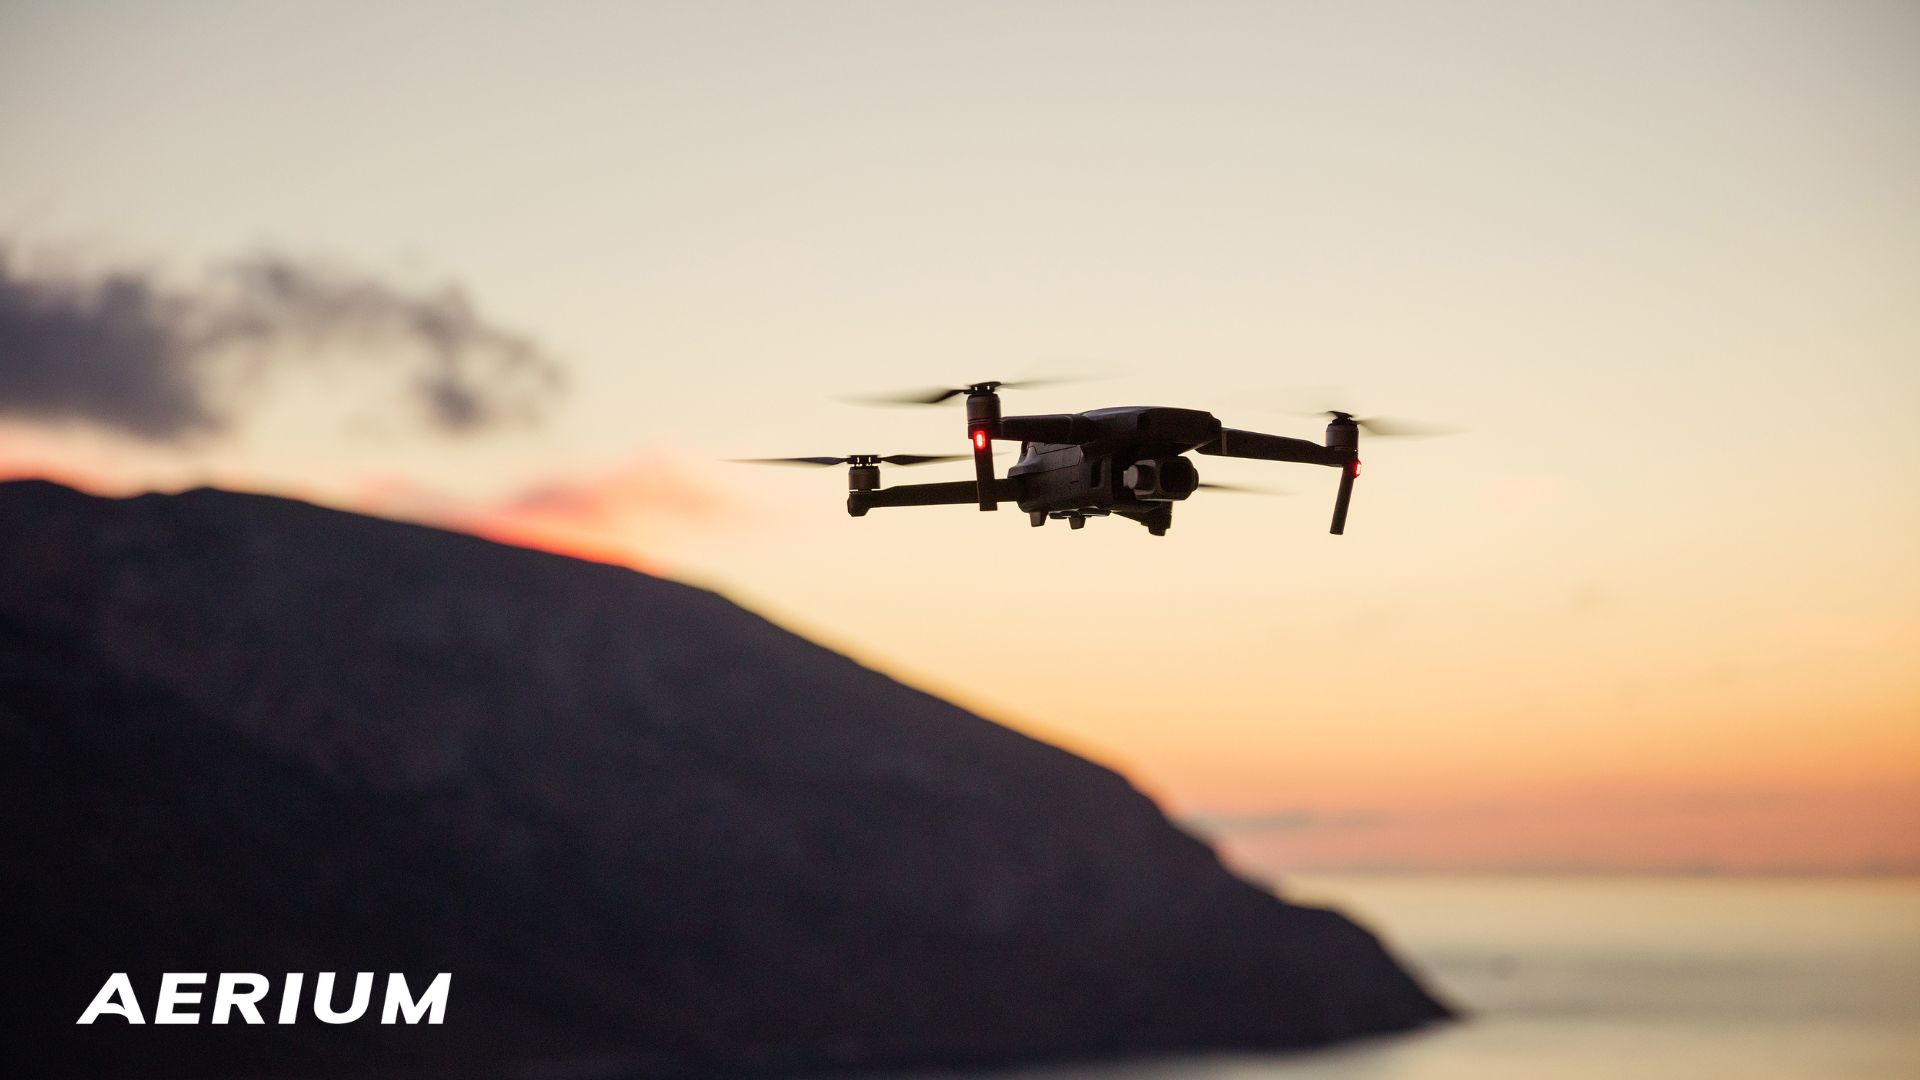 Drony s kamerou pod lupou – jak najít ten pravý pro vaše potřeby? Vzdušín zná odpověď! [komerční článek]